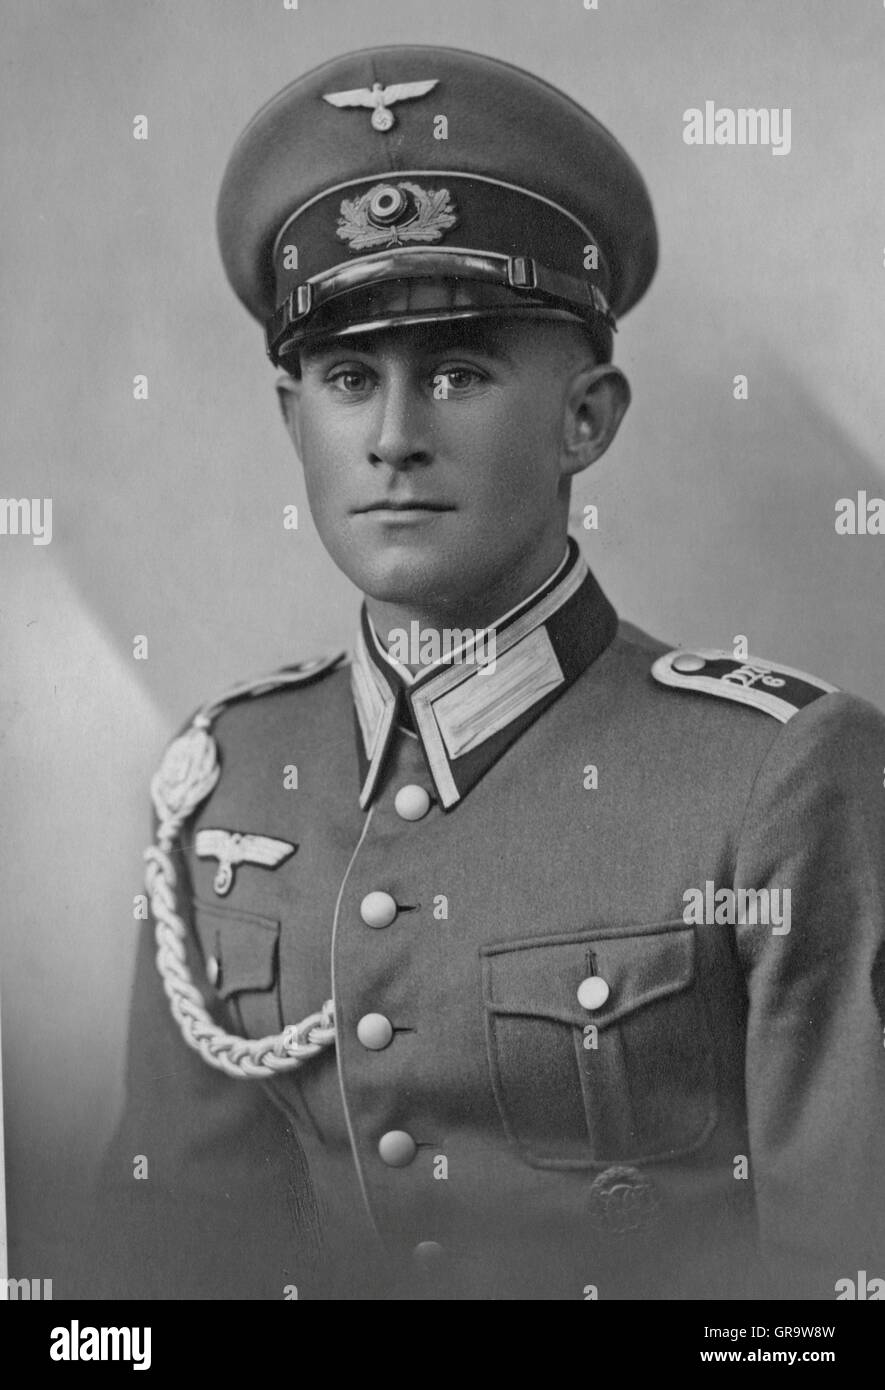 Soldat Allemand en uniforme en 1934 Banque D'Images